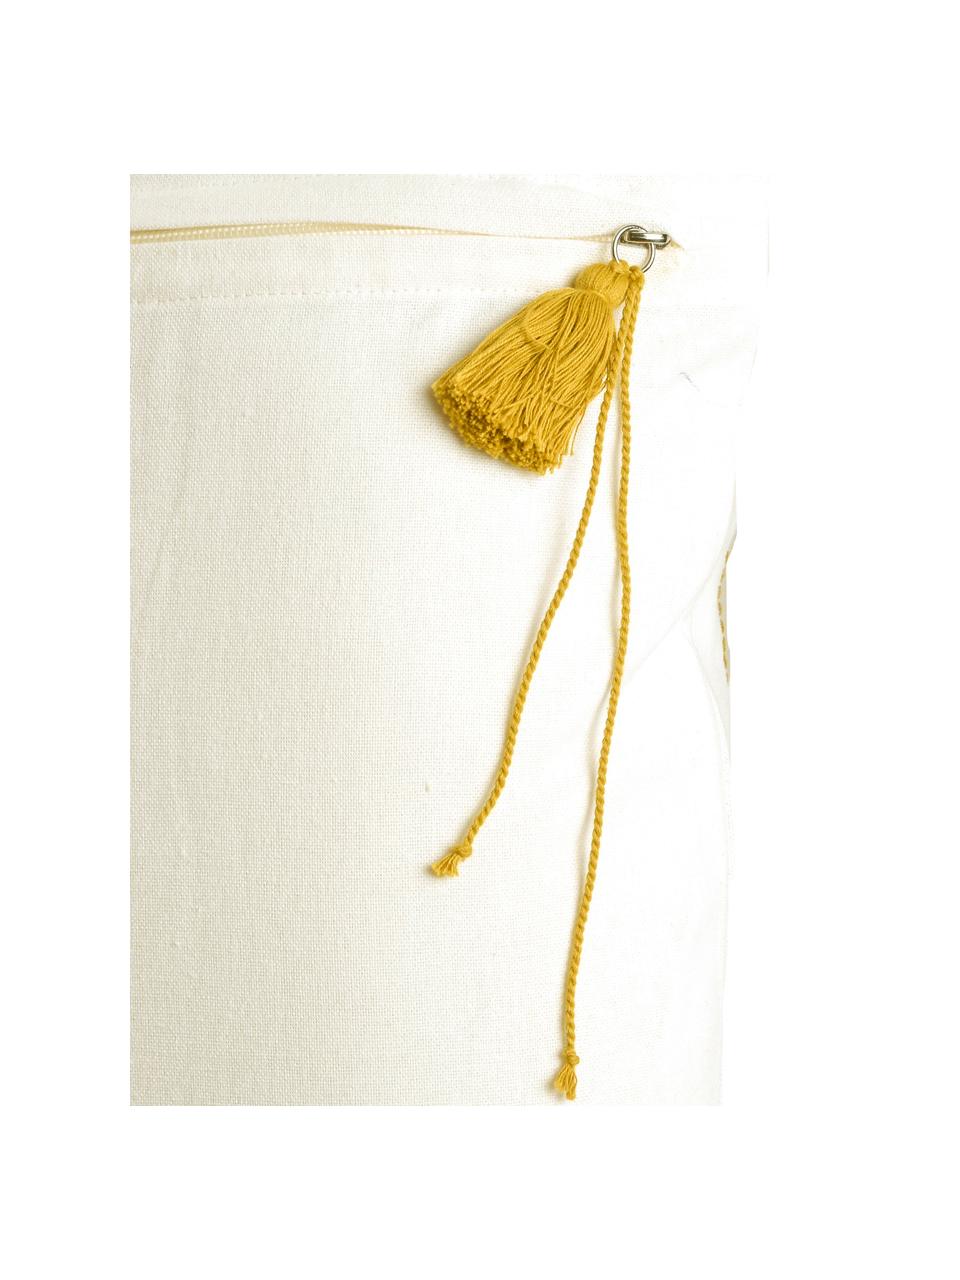 Kissenhülle Blanket mit Quasten, 100% Baumwolle, Gelb, Weiß, 50 x 50 cm